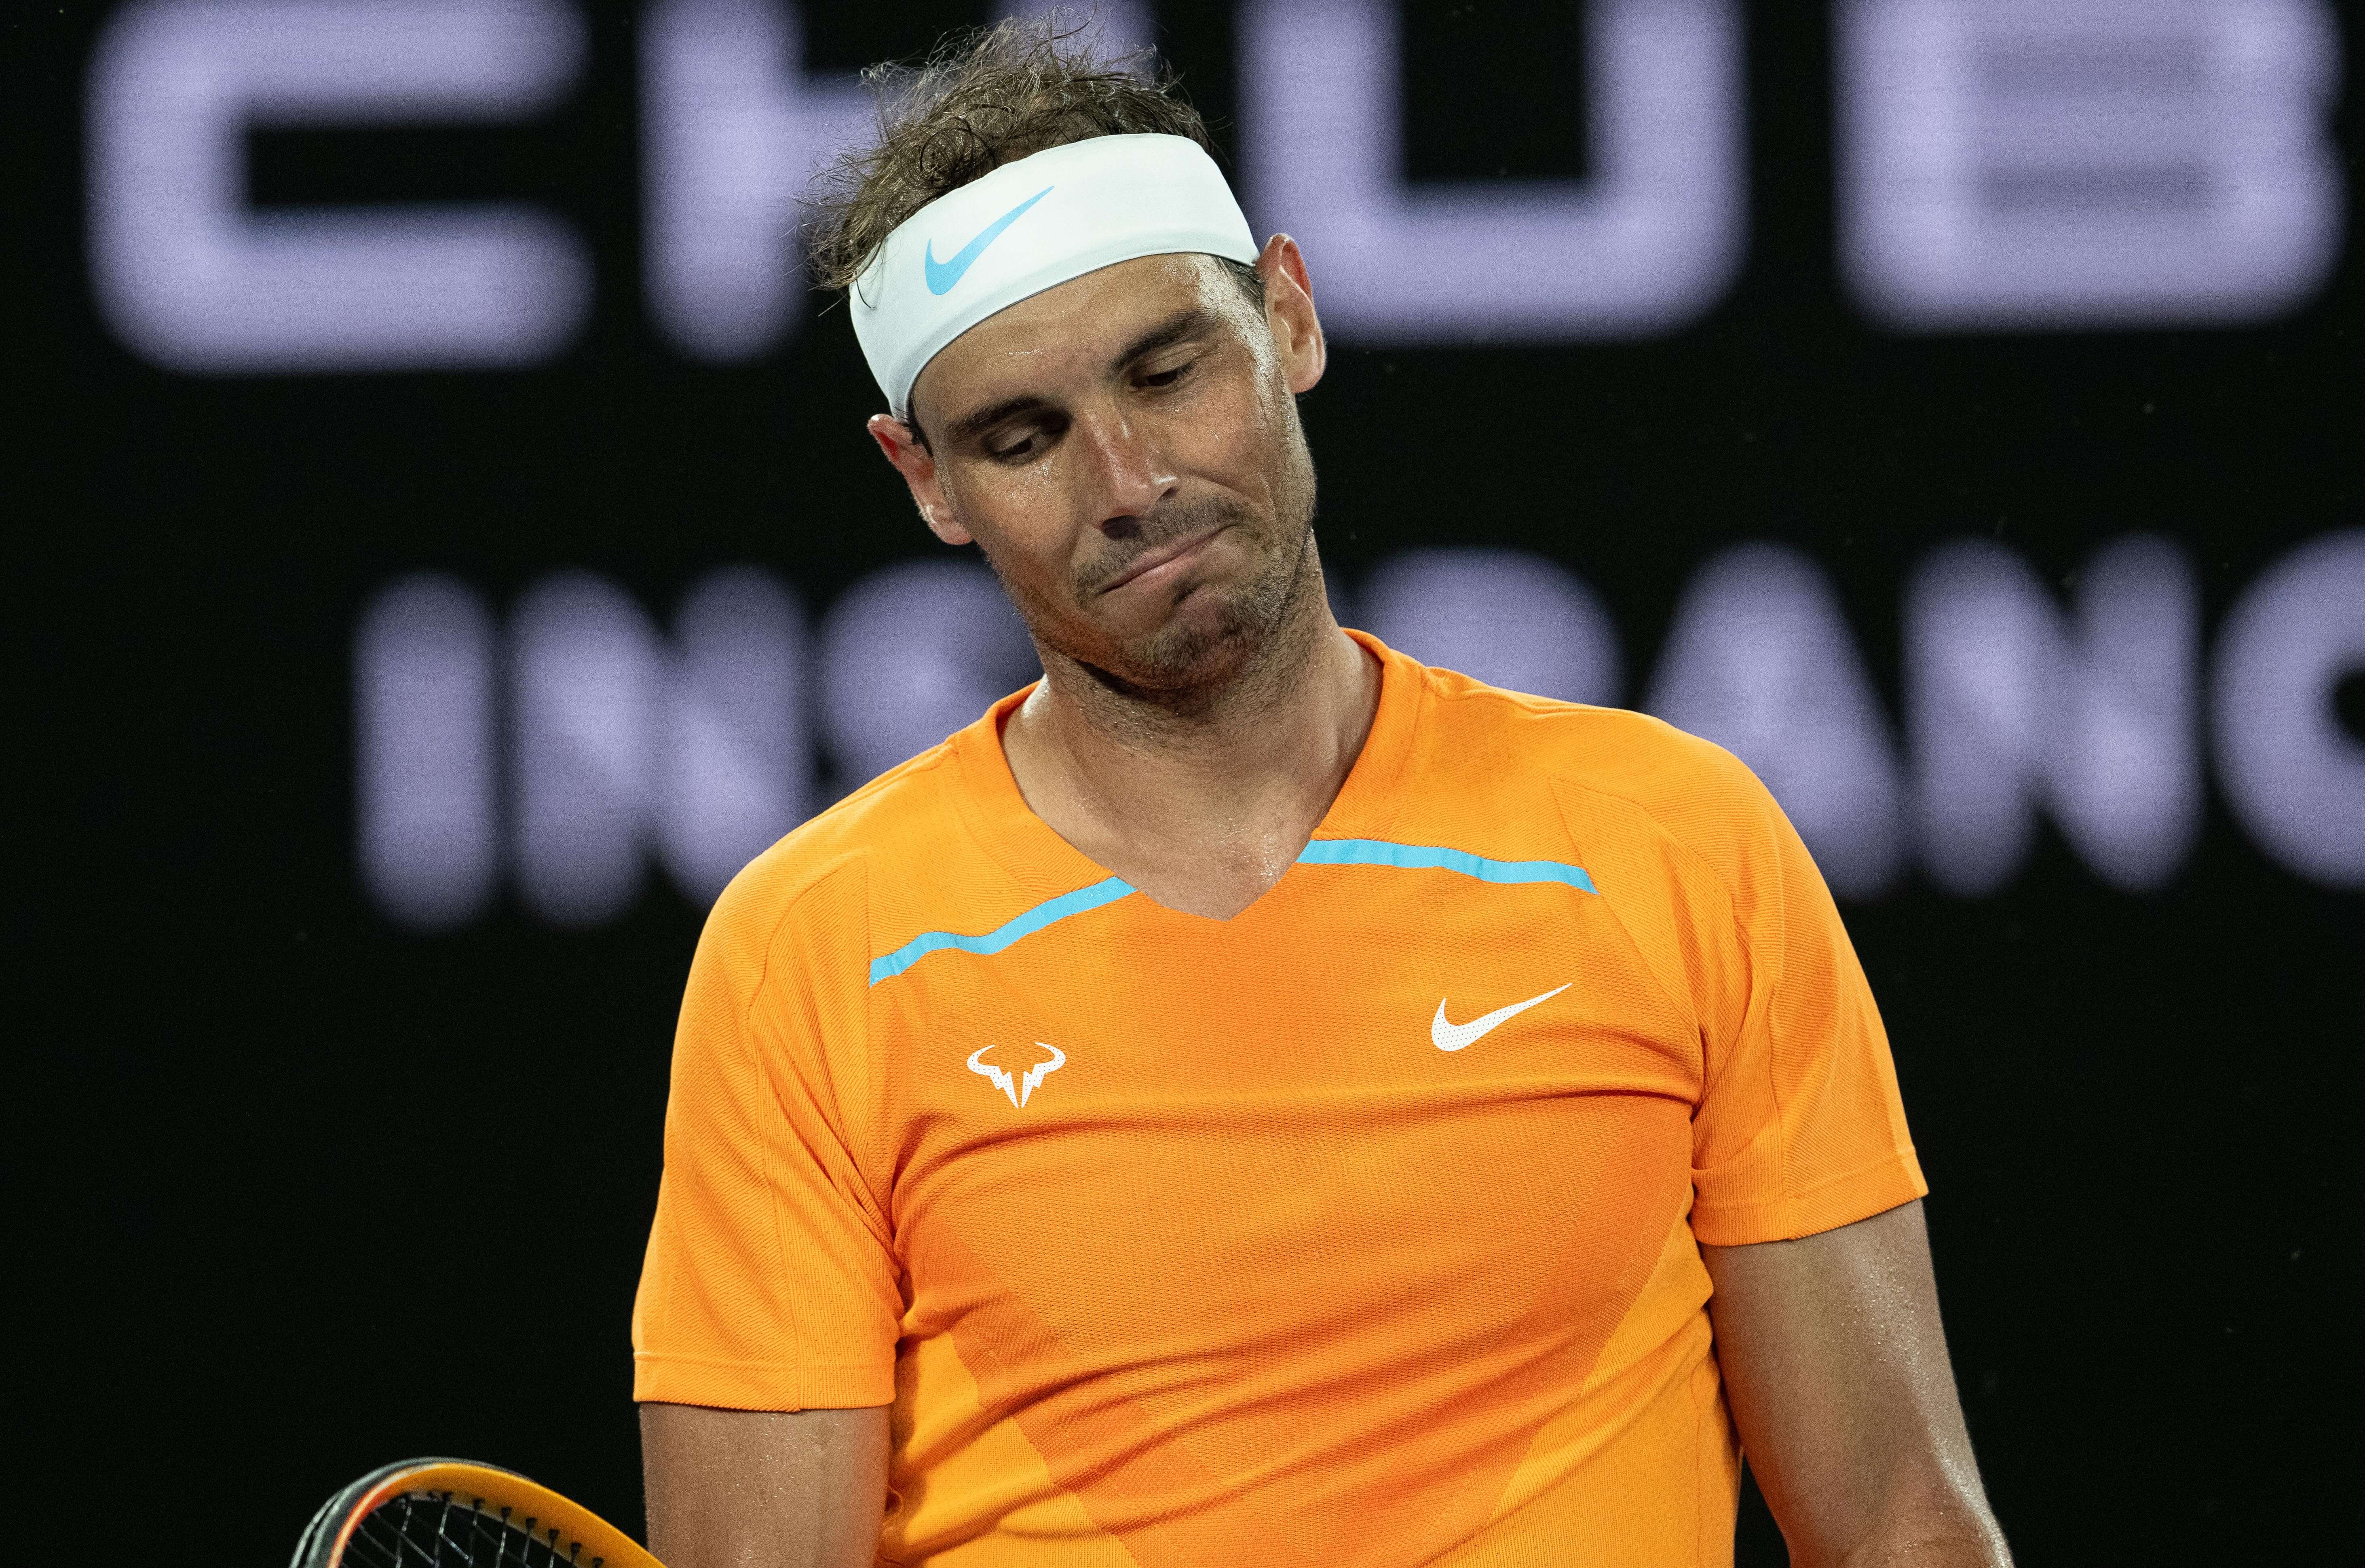 Rafael Nadal fliegt nach 18 Jahren aus Top 10 der ATP-Weltrangliste